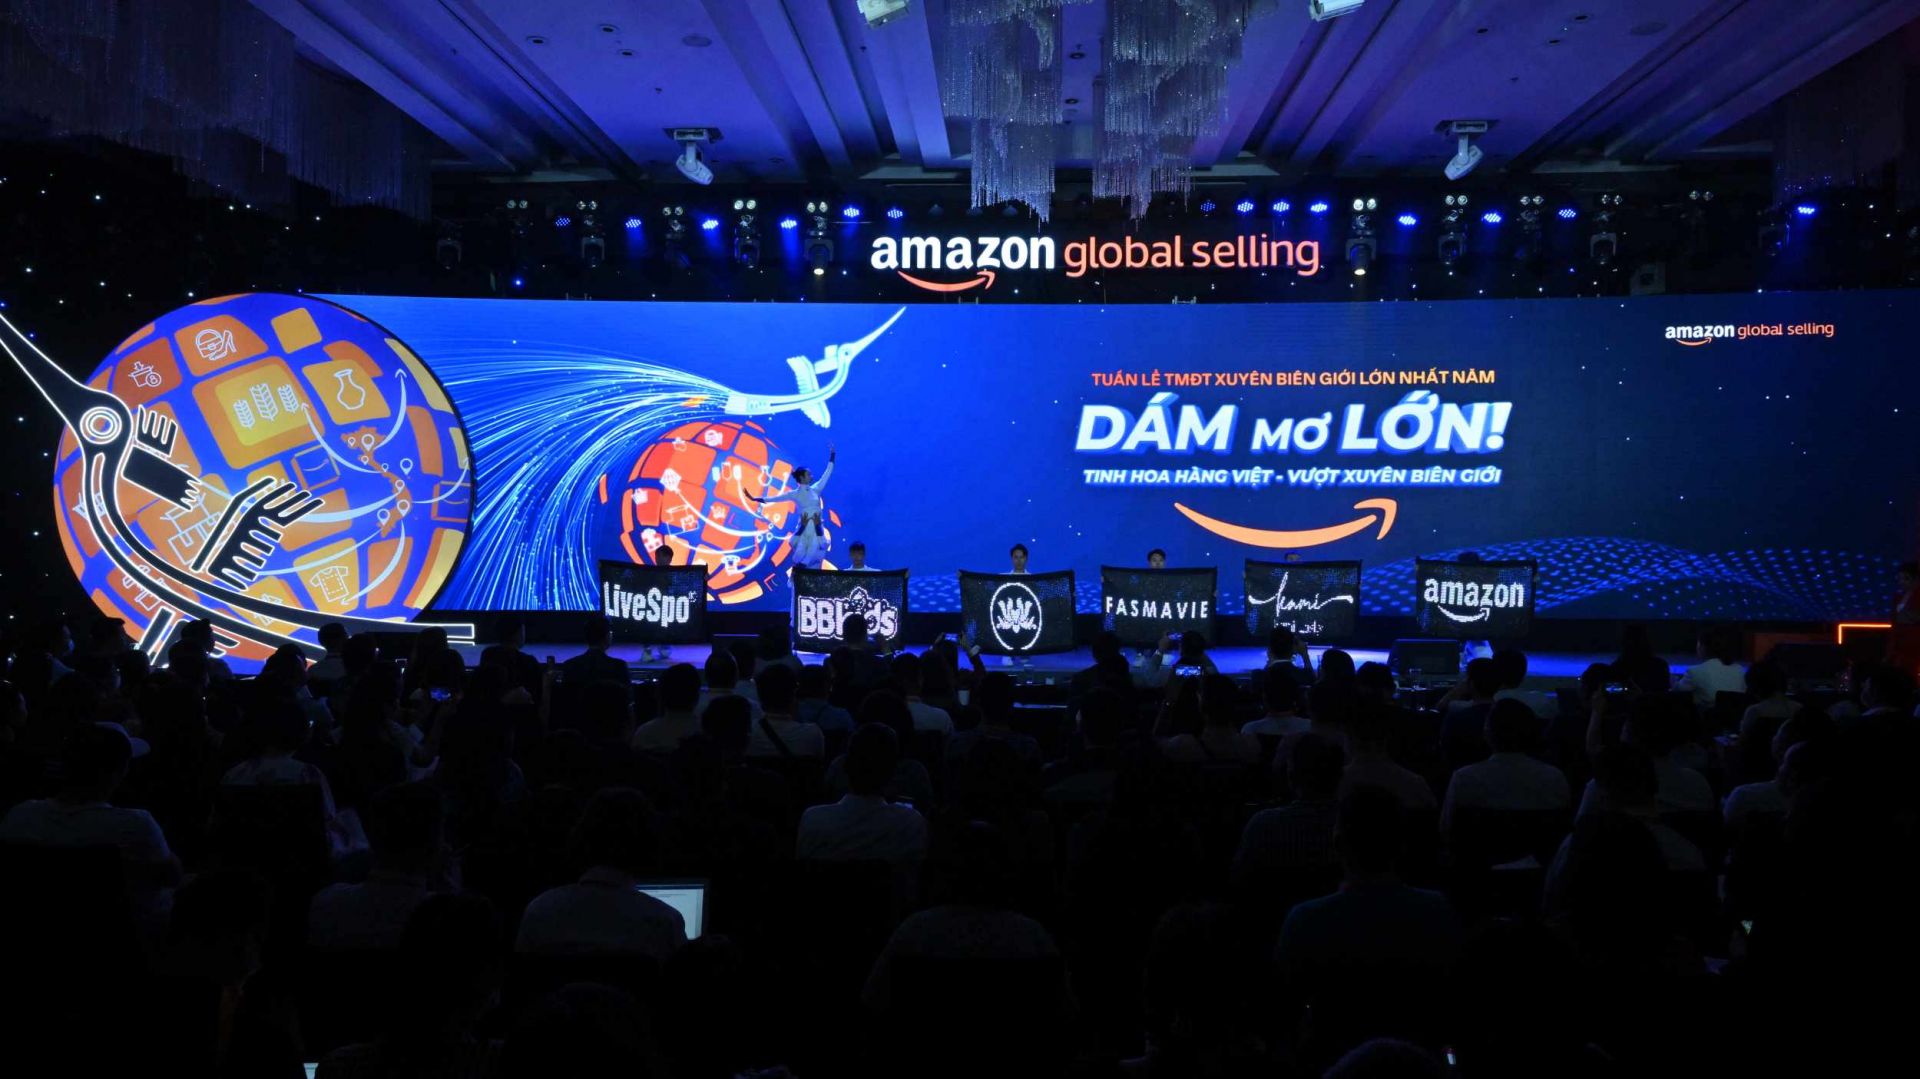 Amazon Week 2022 được kỳ vọng sẽ kết nối và tương tác với hàng ngàn đối tác bán hàng Việt Nam để xây dựng một môi trường phát triển năng động, đồng thời trang bị kiến thức kinh doanh và hỗ trợ các thương hiệu Việt Nam khai phá tiềm năng trên thị trường quốc tế